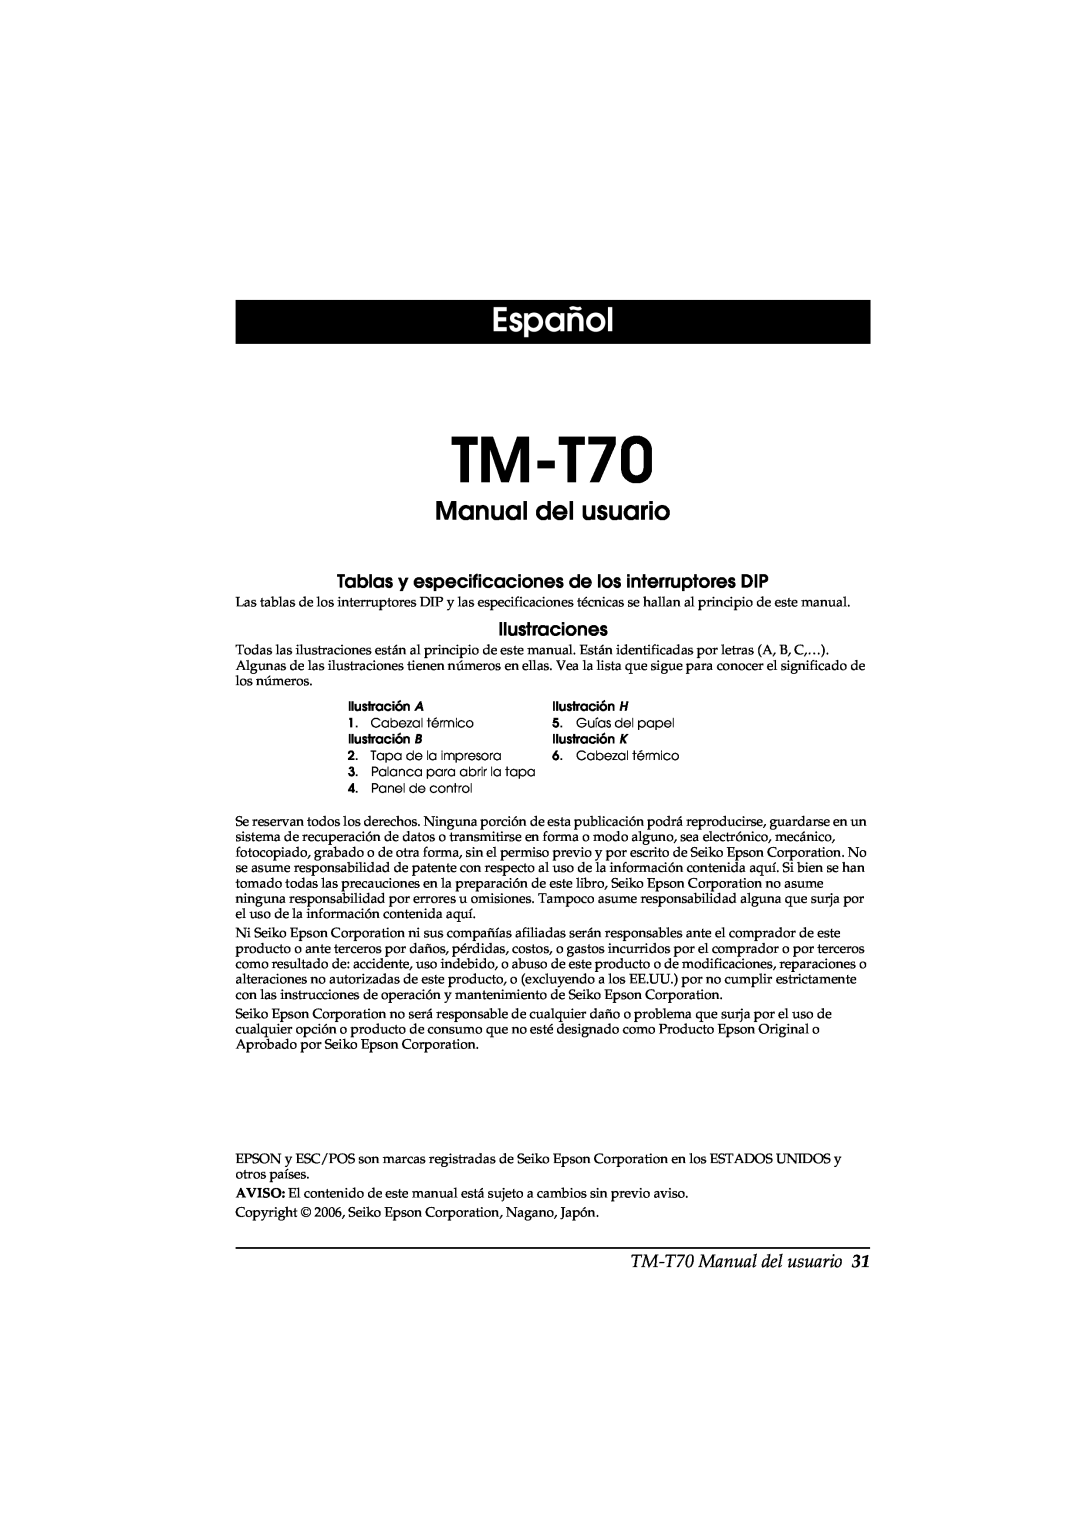 Seiko Group TM-T70 Español, Manual del usuario, Tablas y especificaciones de los interruptores DIP, Ilustraciones 